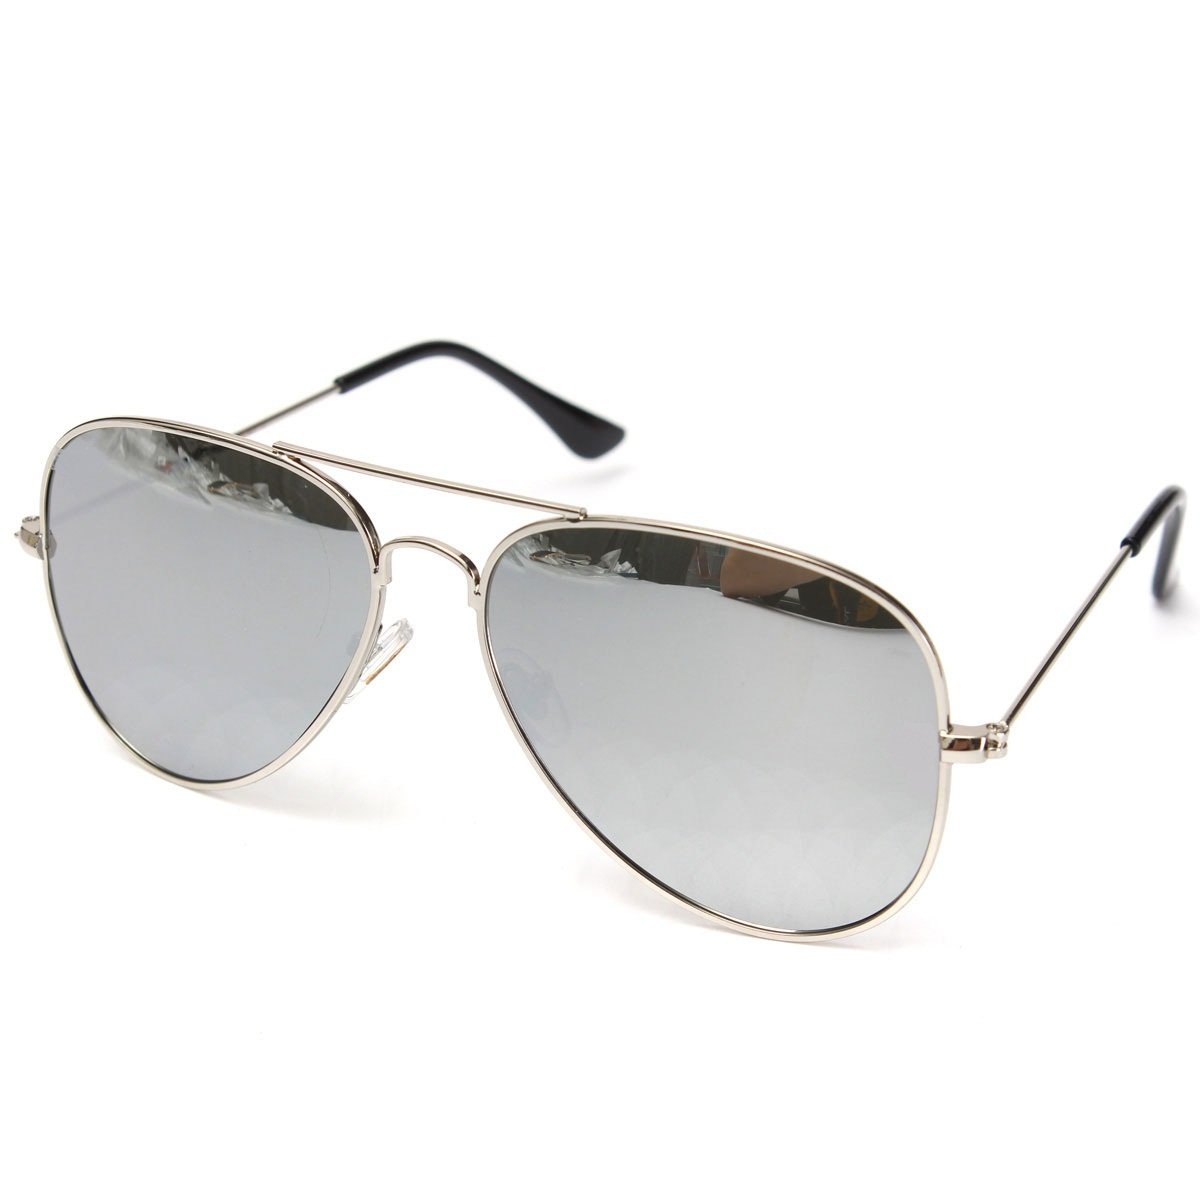 5 best sunglasses for men(Rs.100 to 200) | SKTW